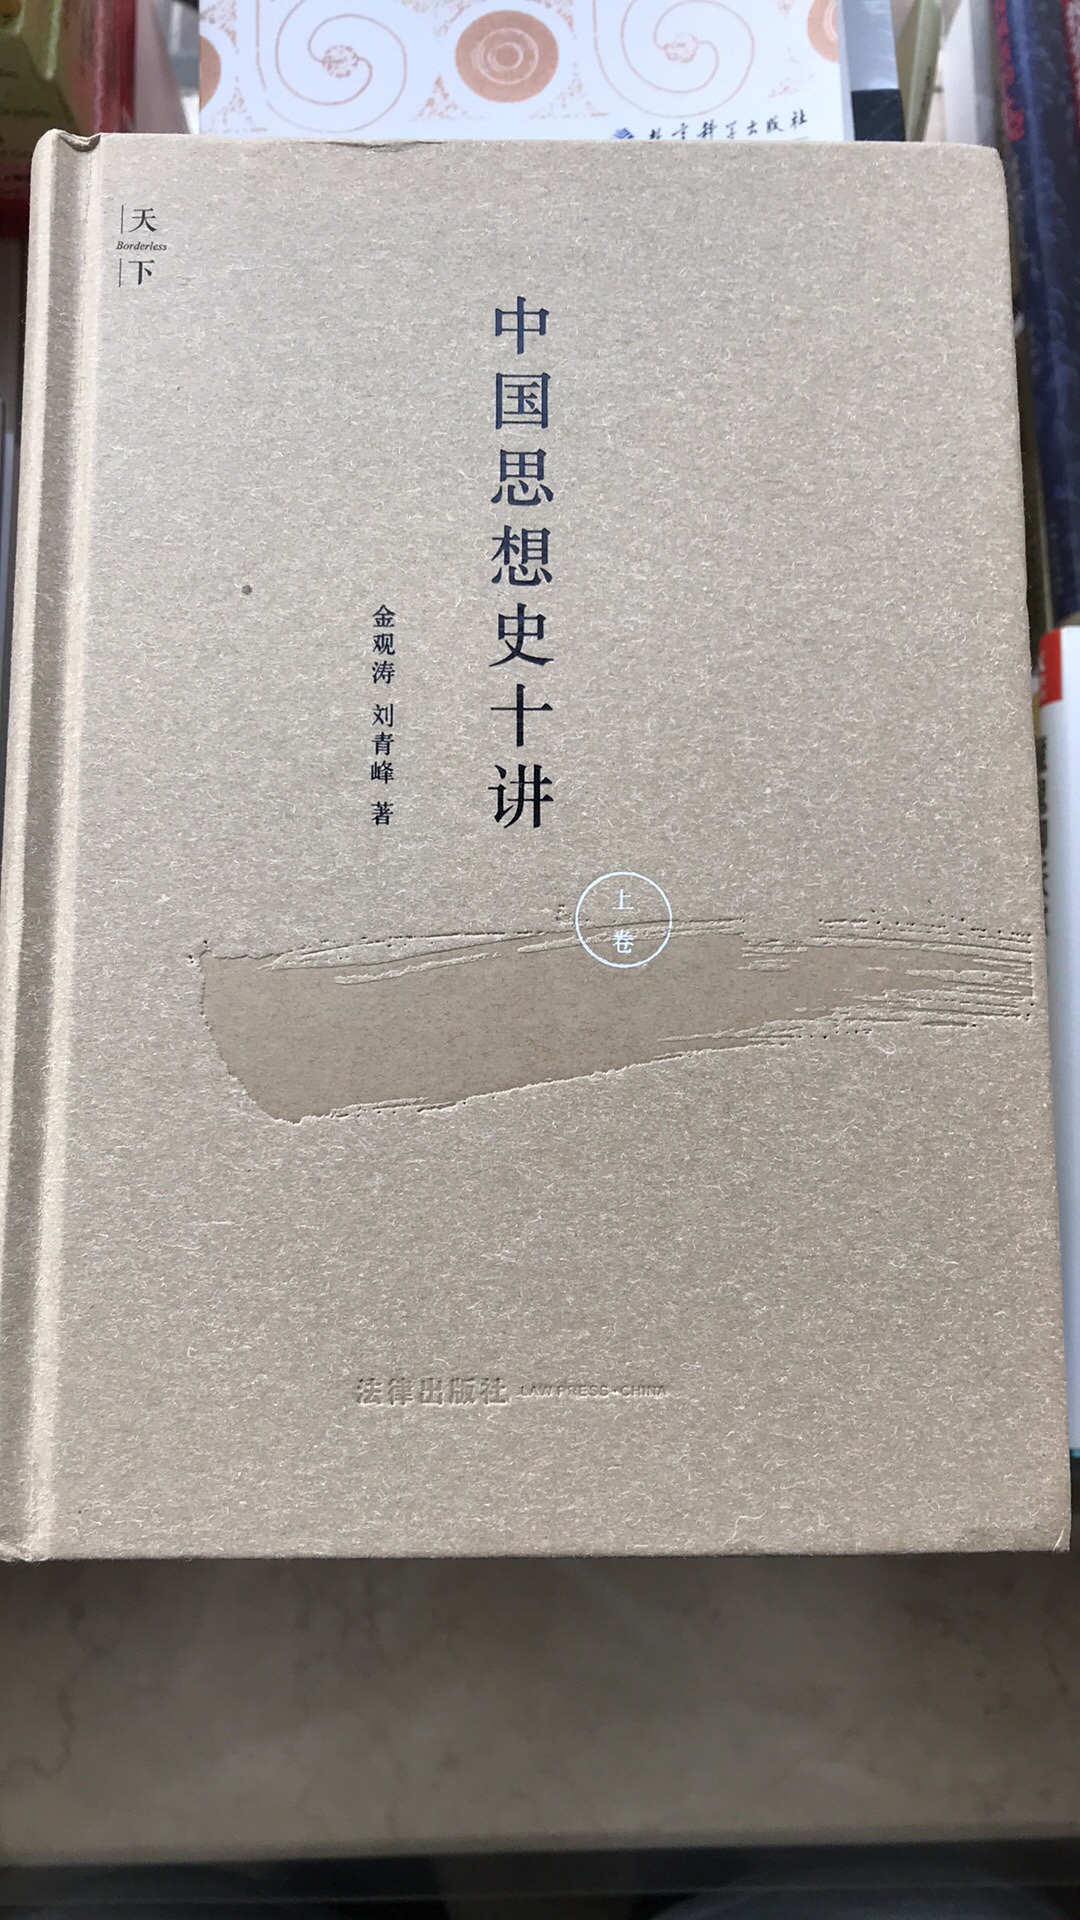 大牛金观涛老师的作品，只可惜下册不太可能出版了。